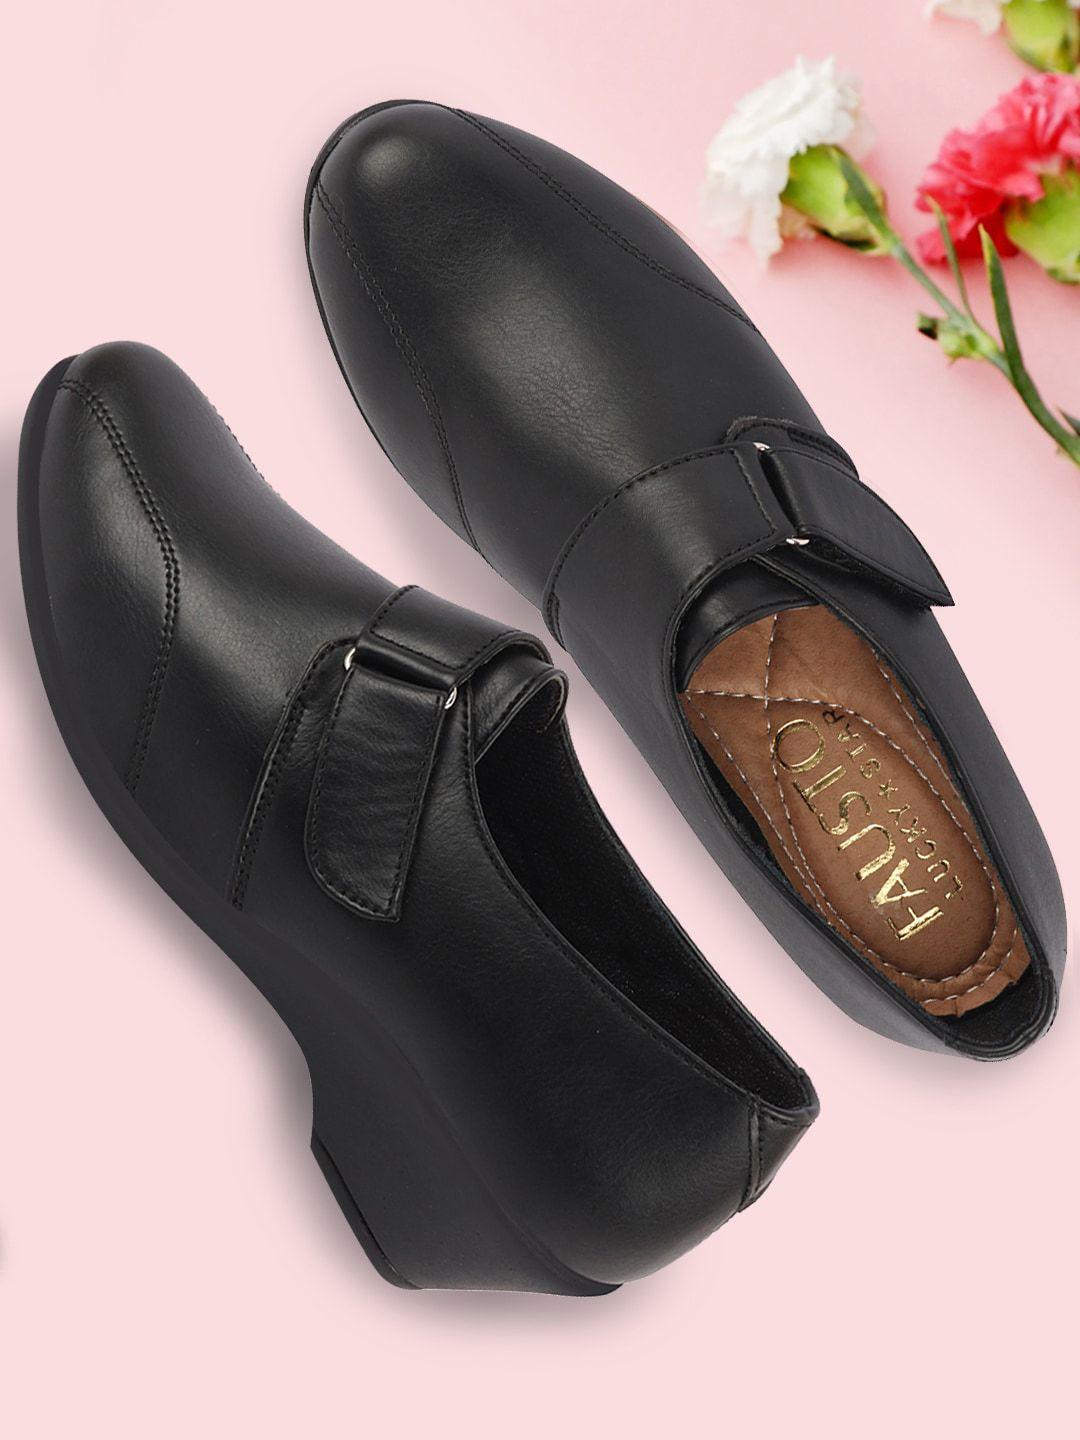 fausto round toe comfort heel derbys